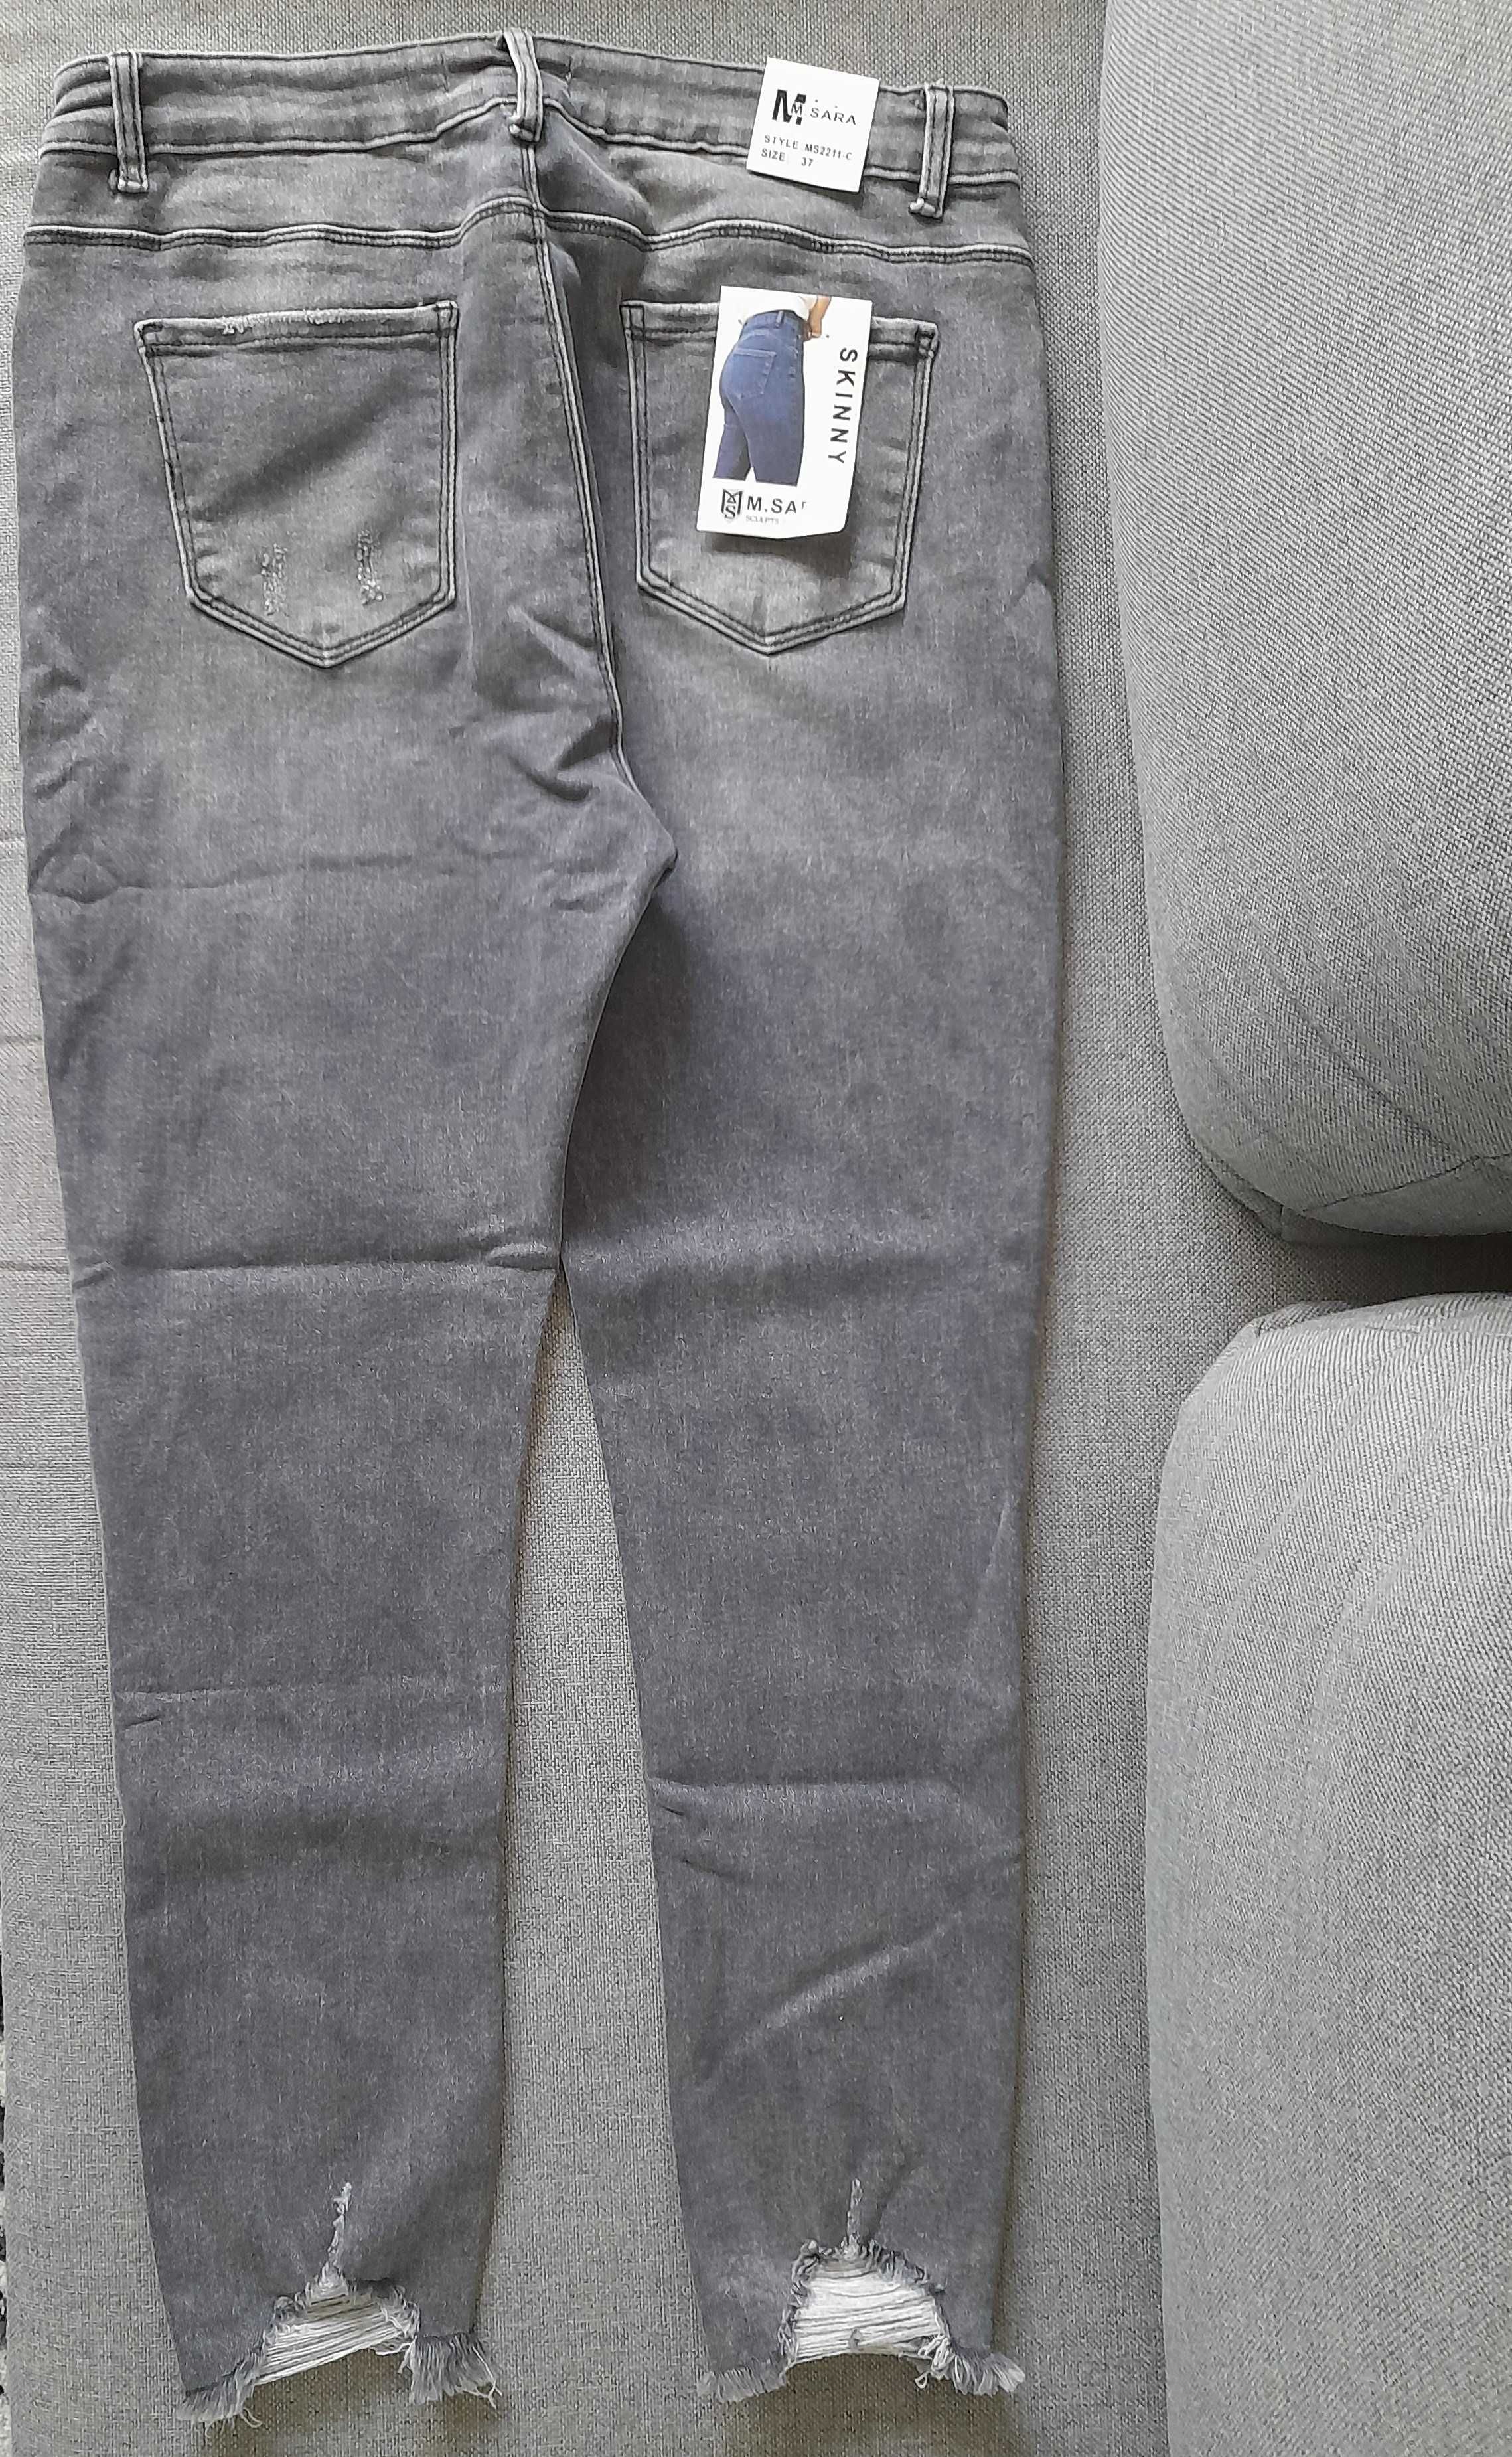 spodnie dżinsowe marki MSARA NOWE!